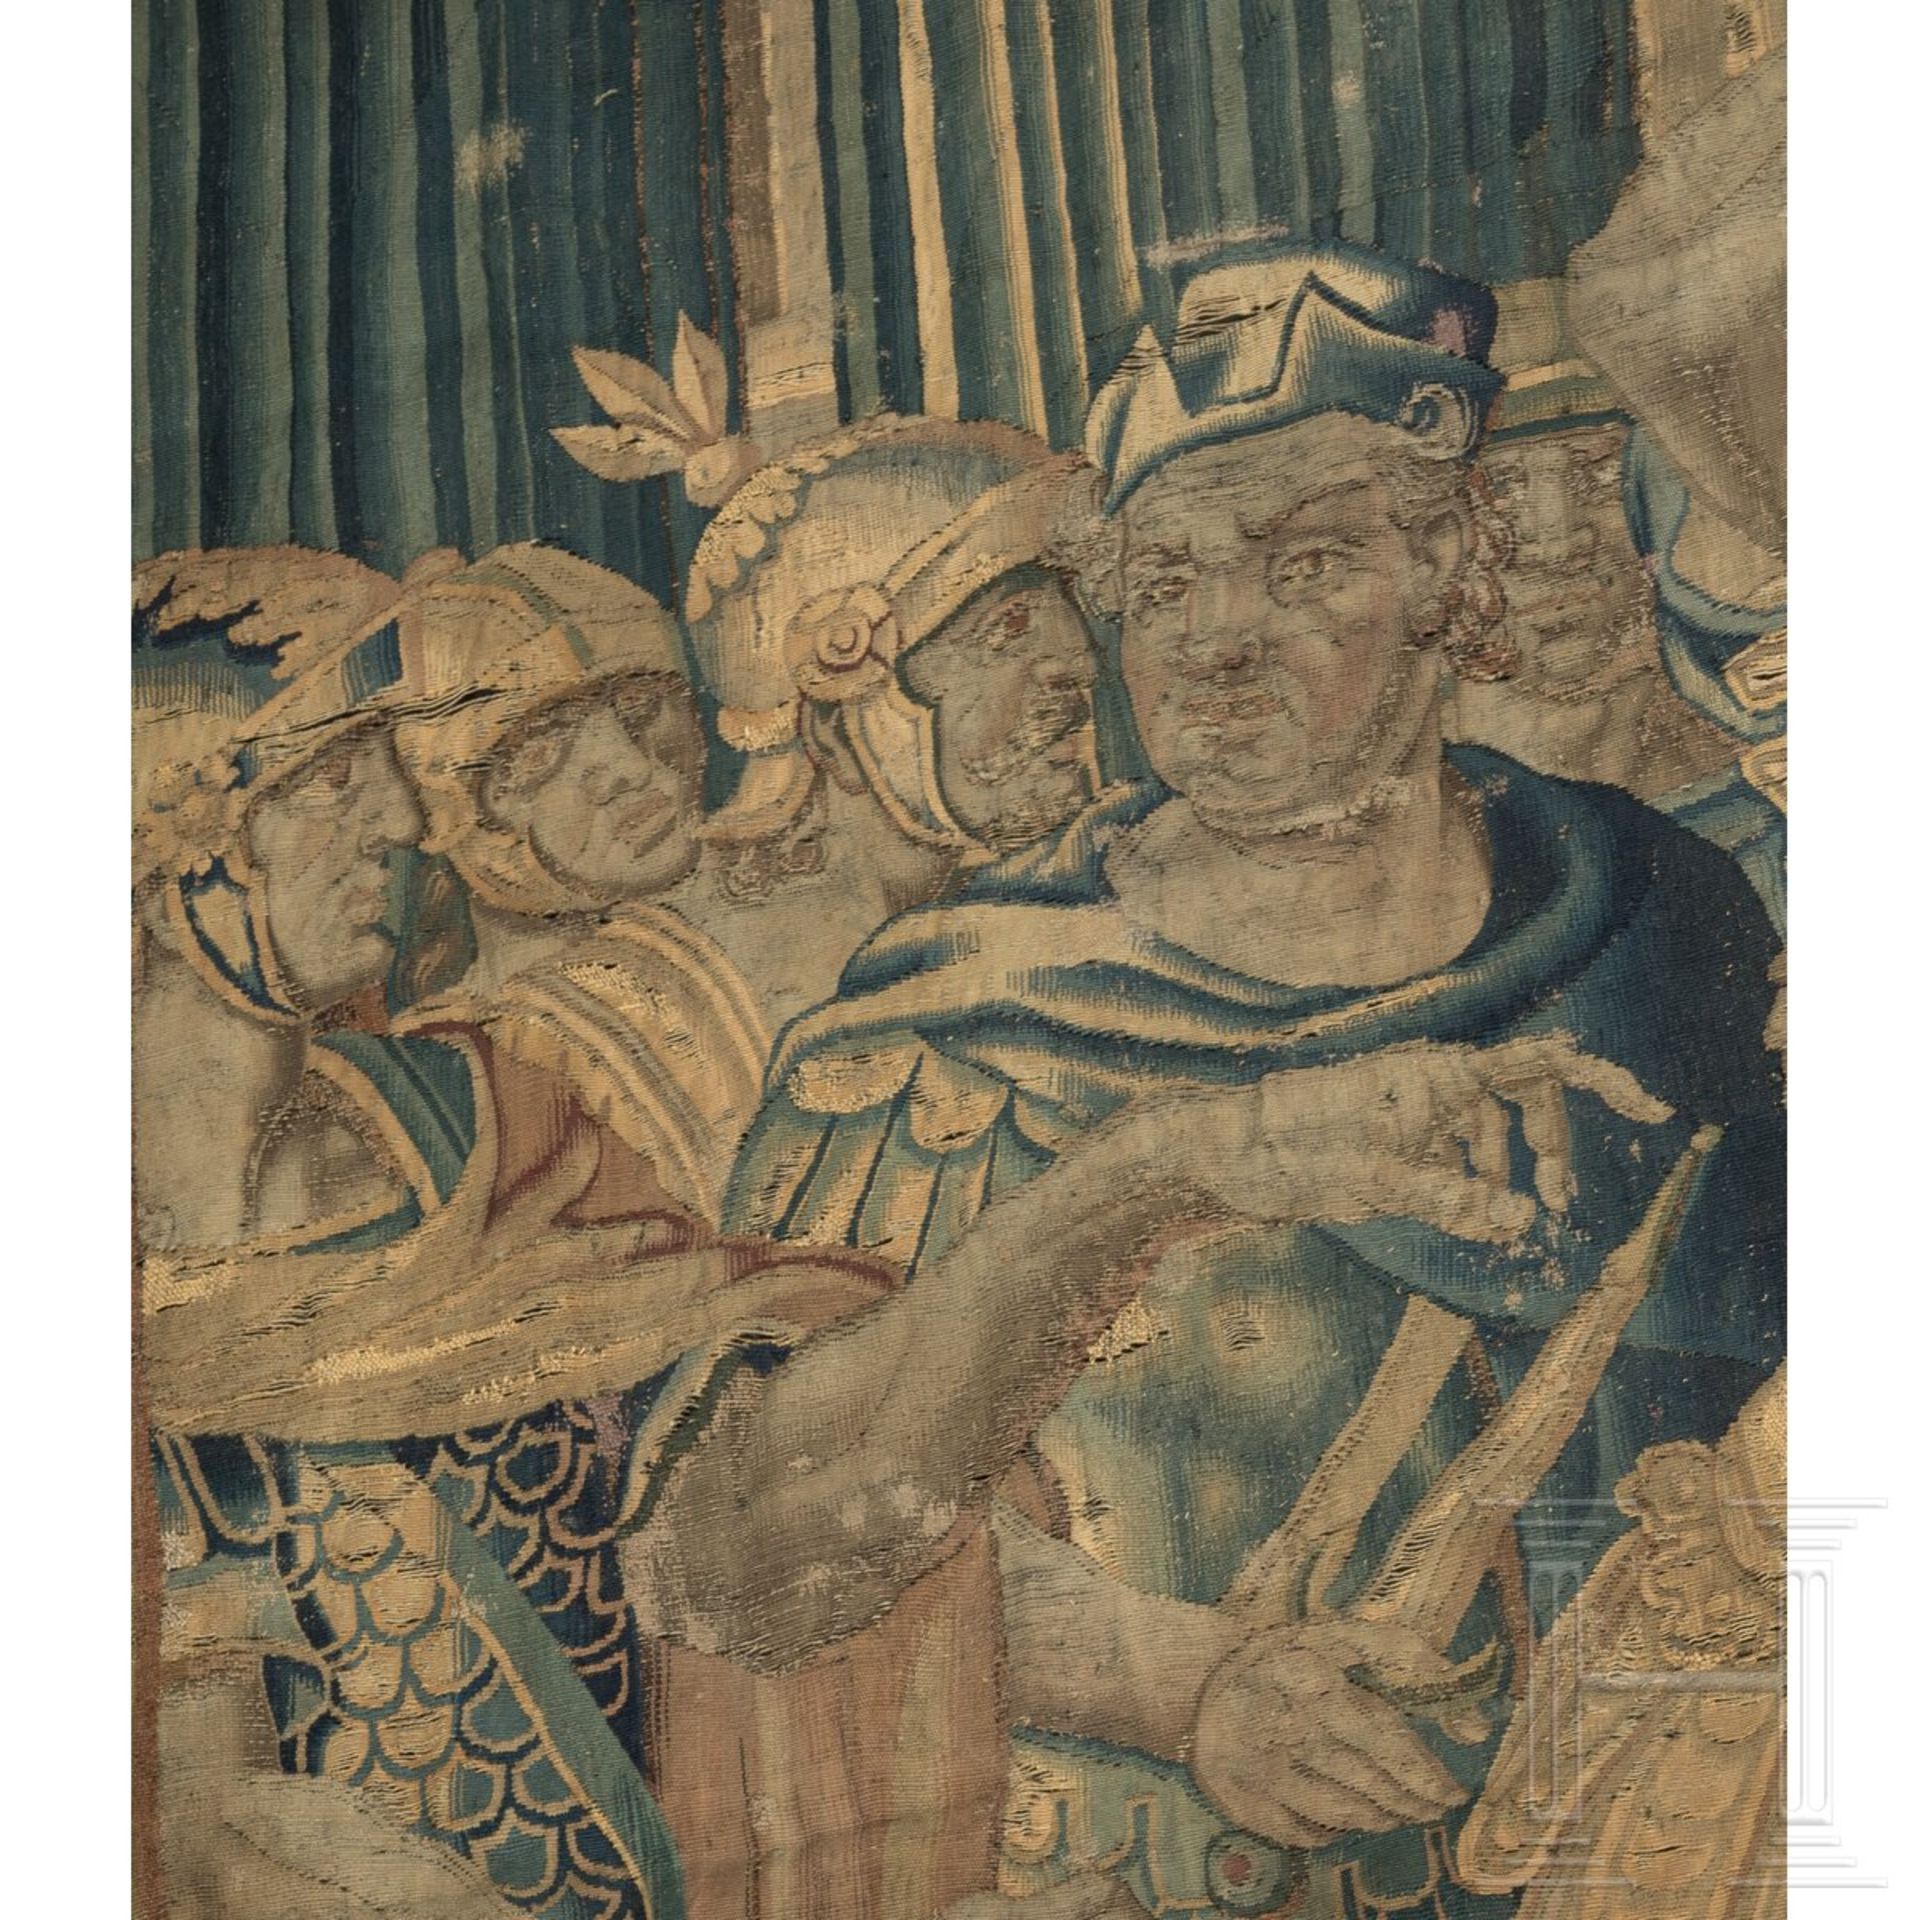 Großer Gobelin mit Darstellung der Coriolanus-Legende, Tours, Frankreich, frühes 17. Jhdt - Bild 3 aus 8